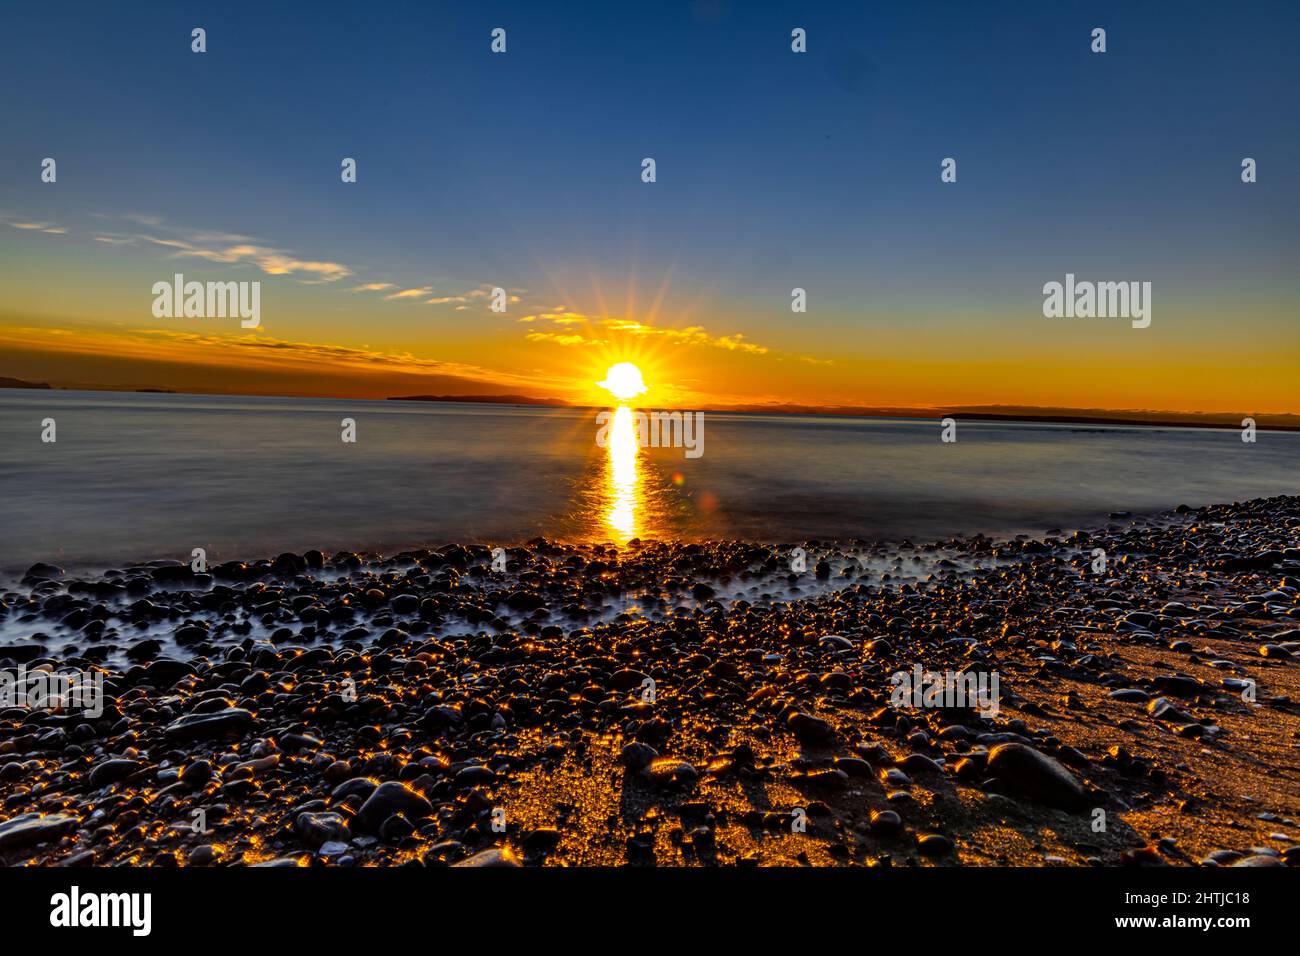 La plage de White Rock en Colombie-Britannique, au Canada, au coucher du soleil Banque D'Images